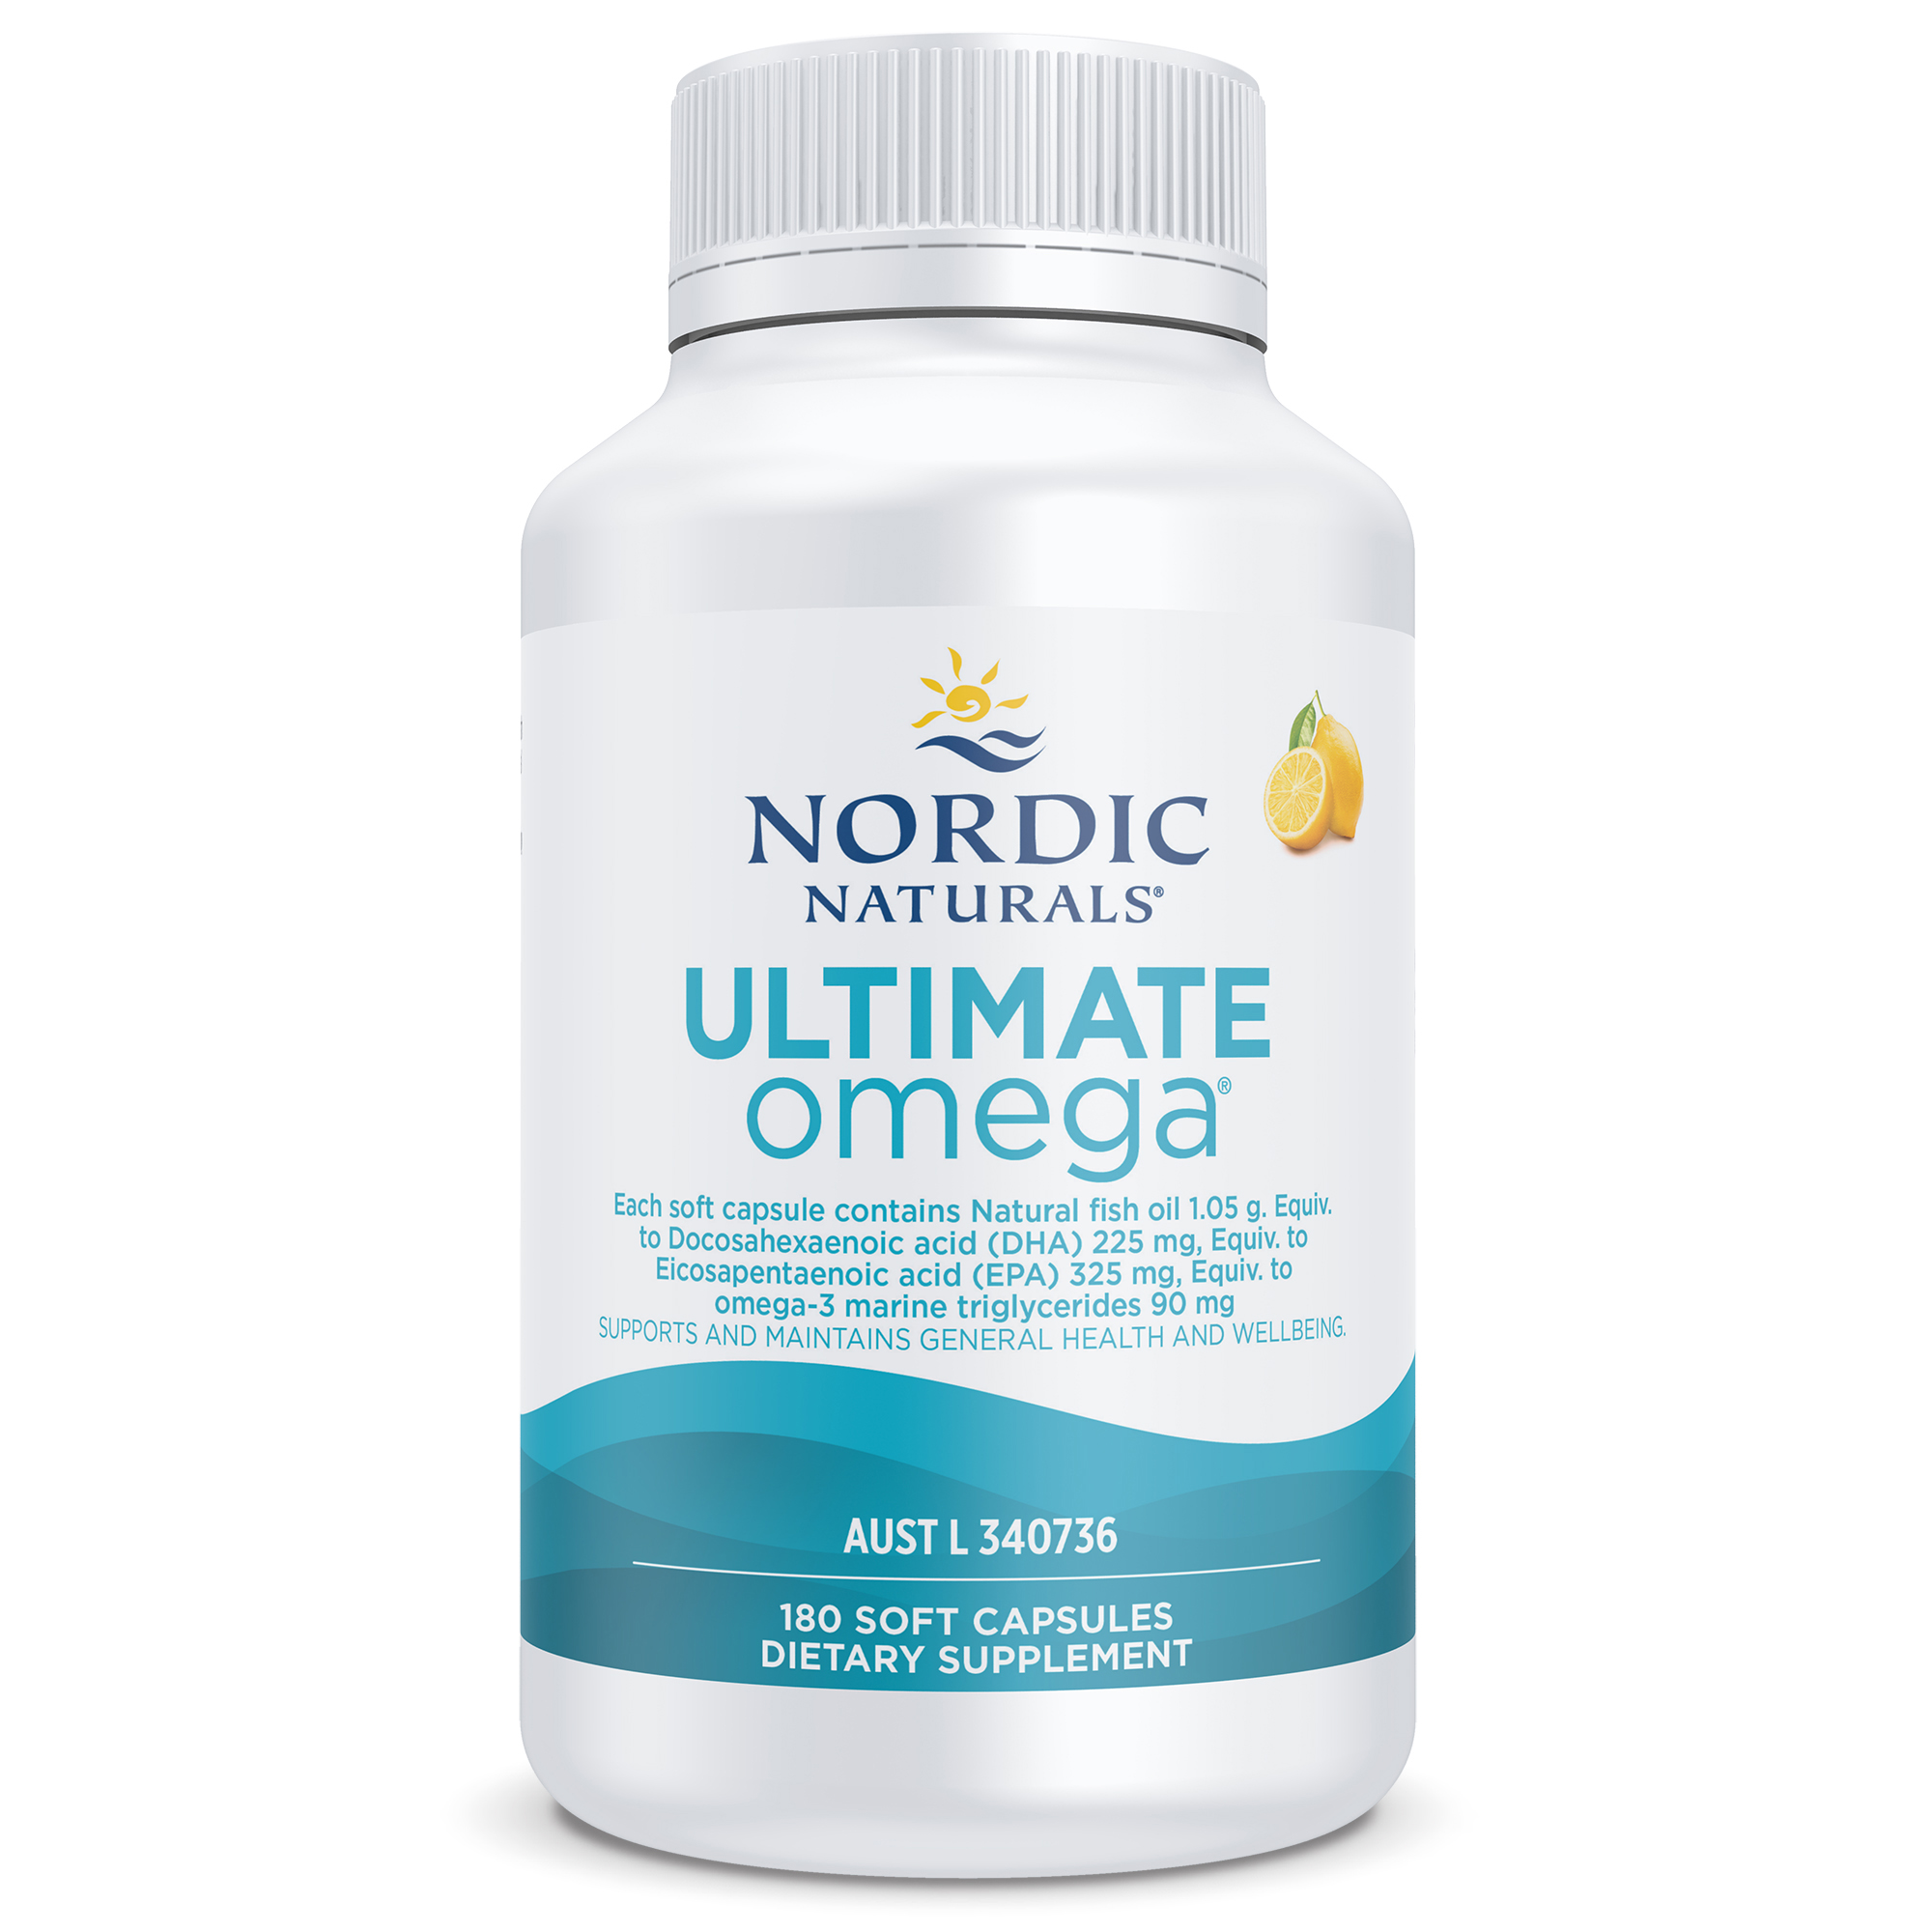 Nordic Naturals Ultimate Omega 180 Soft Gels